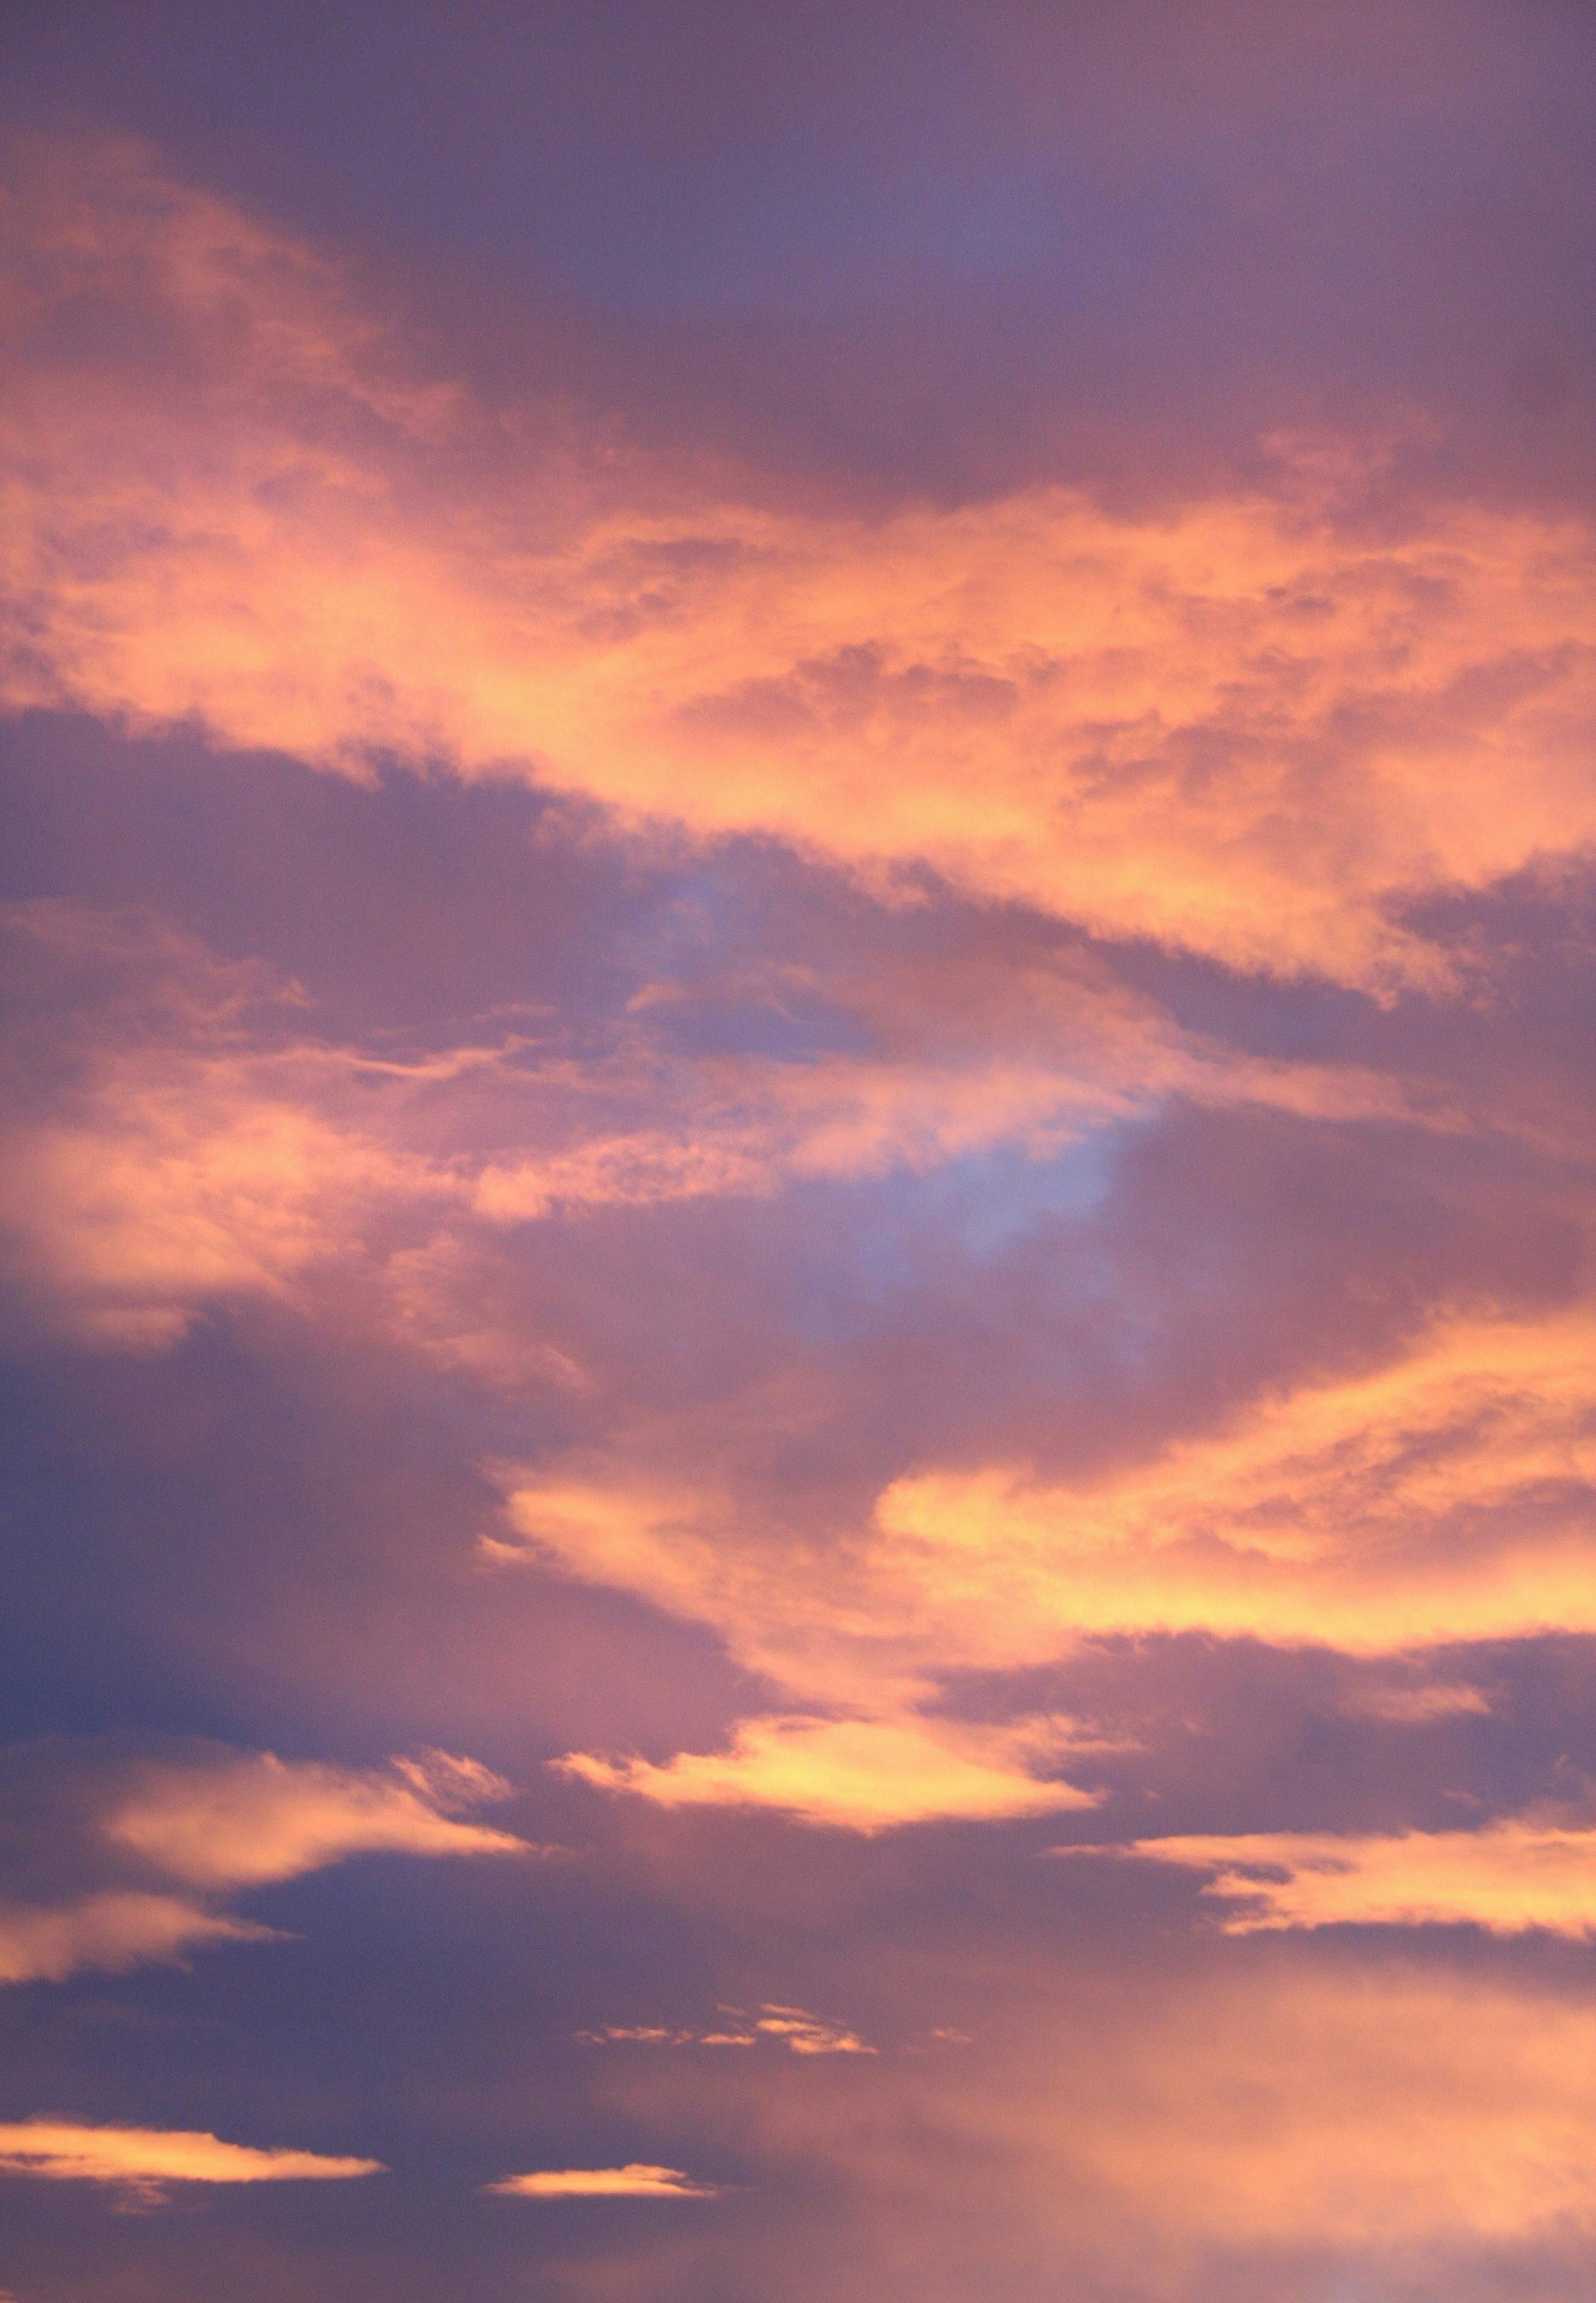 Tải 999 Wallpaper evening sky đẹp nhất, chất lượng cao, miễn phí